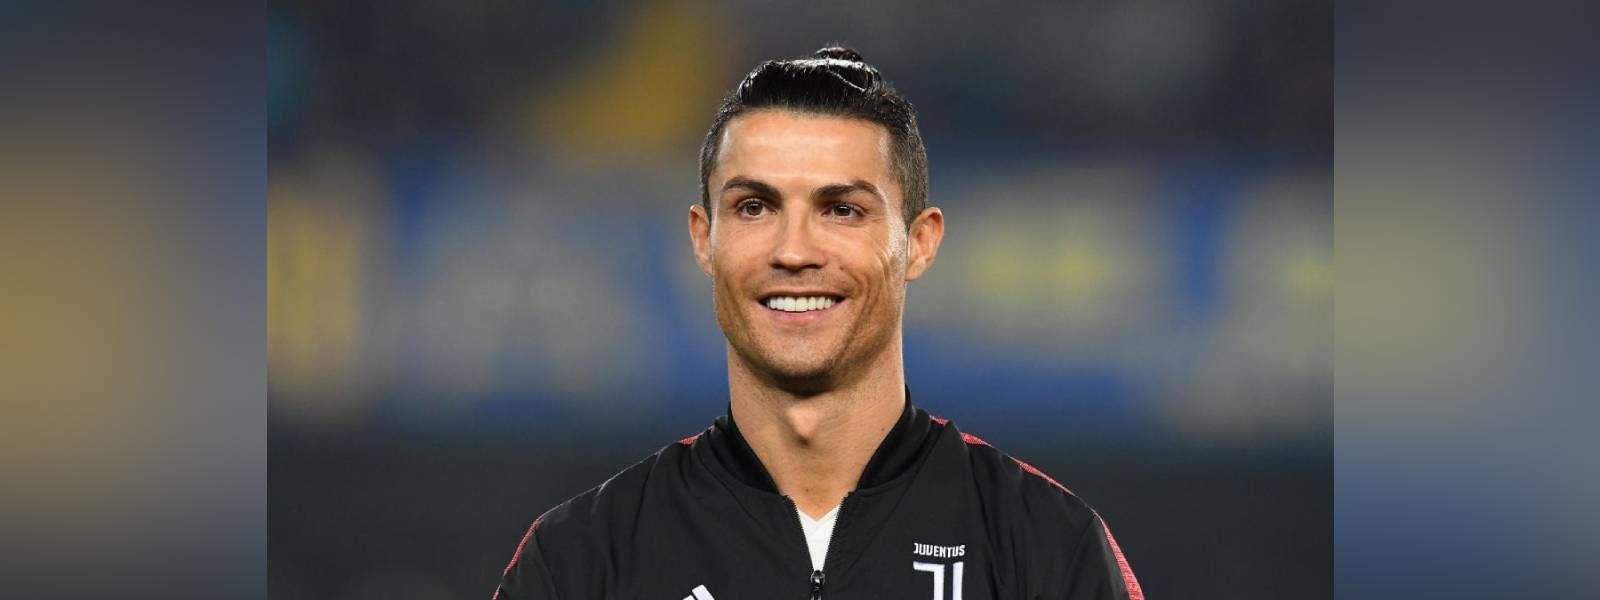 Ronaldo becomes first billionaire footballer